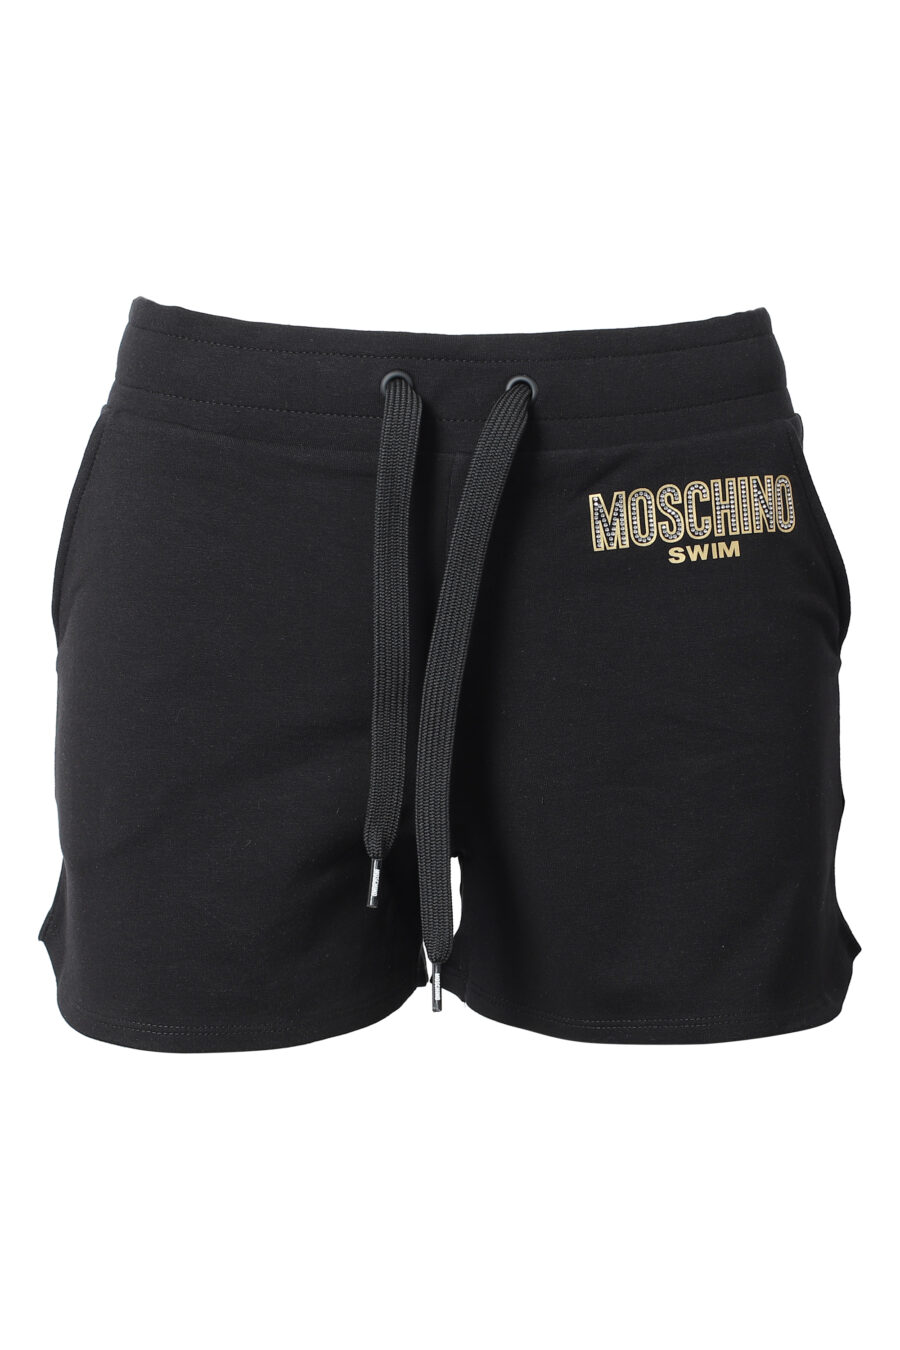 Pantalón negro corto con logo en strass - IMG 9844